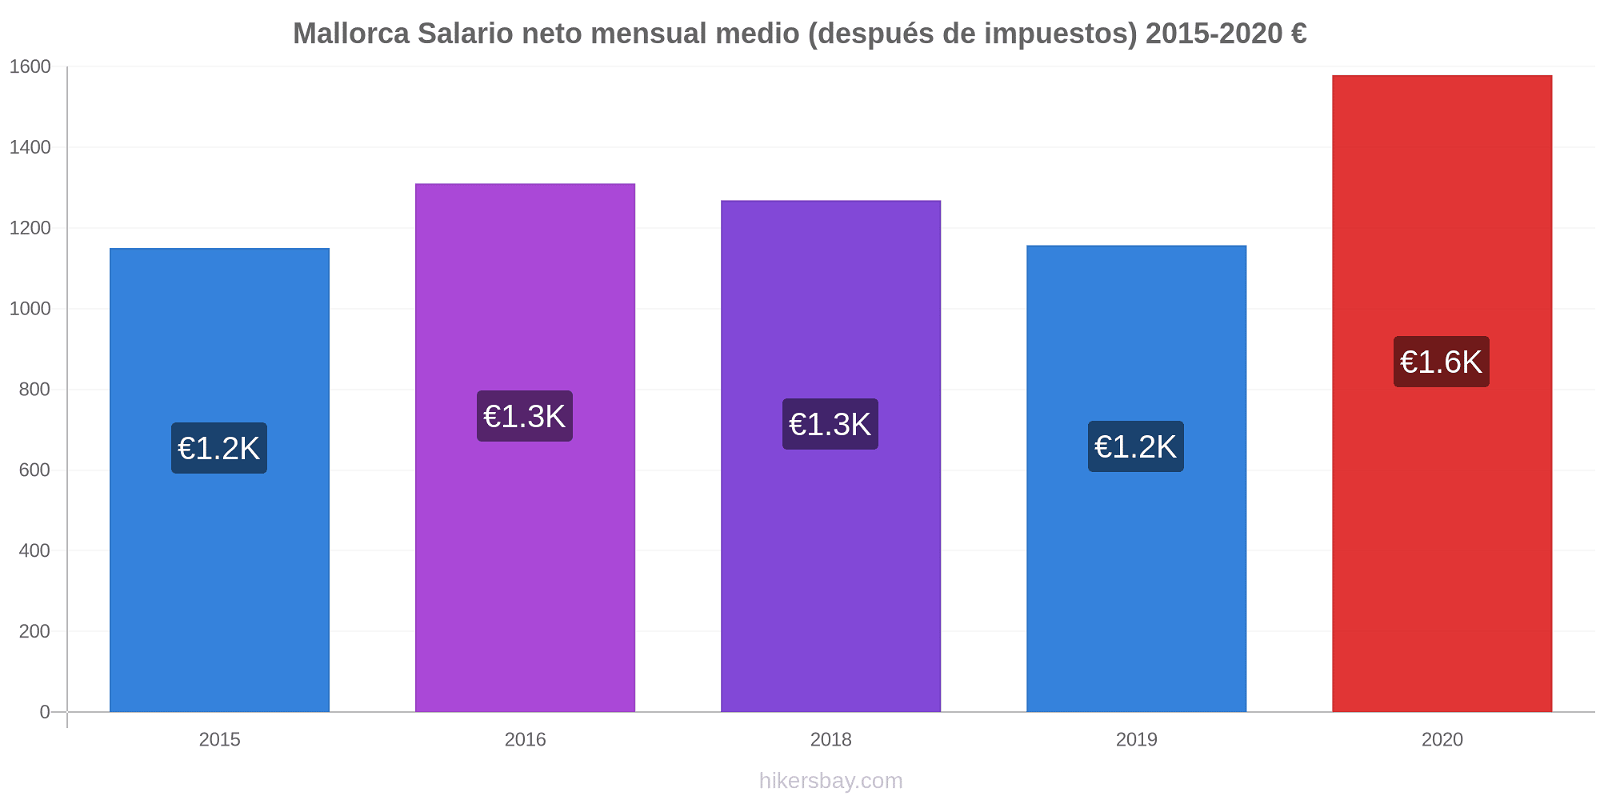 Mallorca cambios de precios Promedio mensual del salario neto (después de pagar impuestos) hikersbay.com